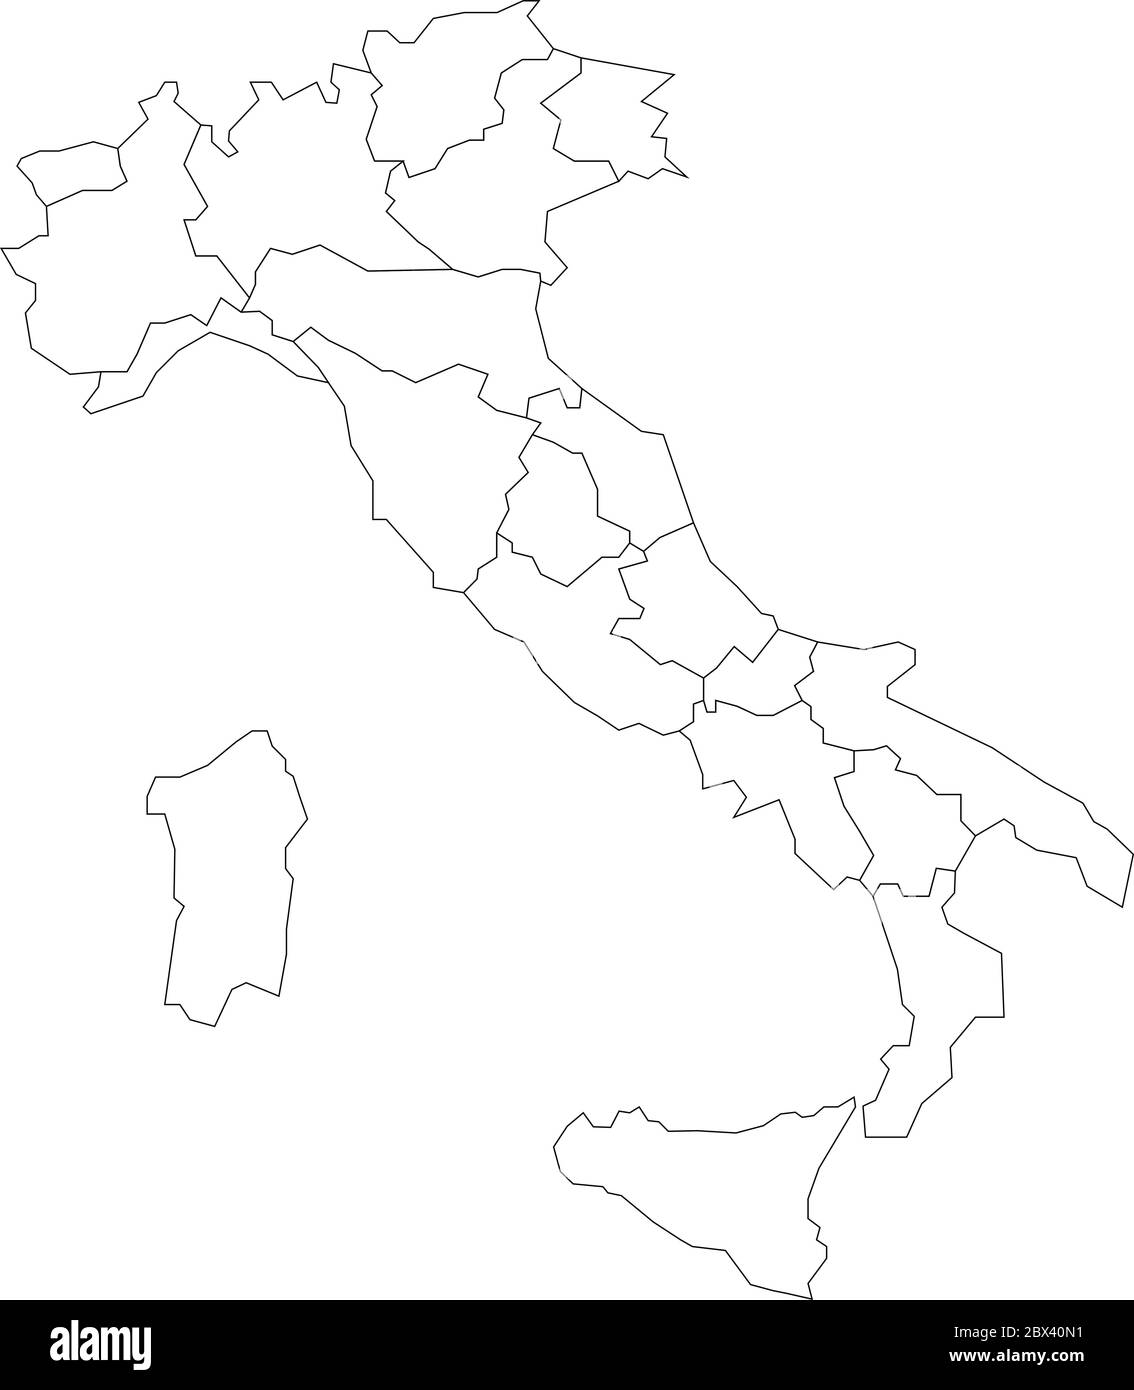 Carte de l'Italie divisée en 20 régions administratives. Bordure blanche et contour noir. Illustration simple à vecteur plat. Illustration de Vecteur